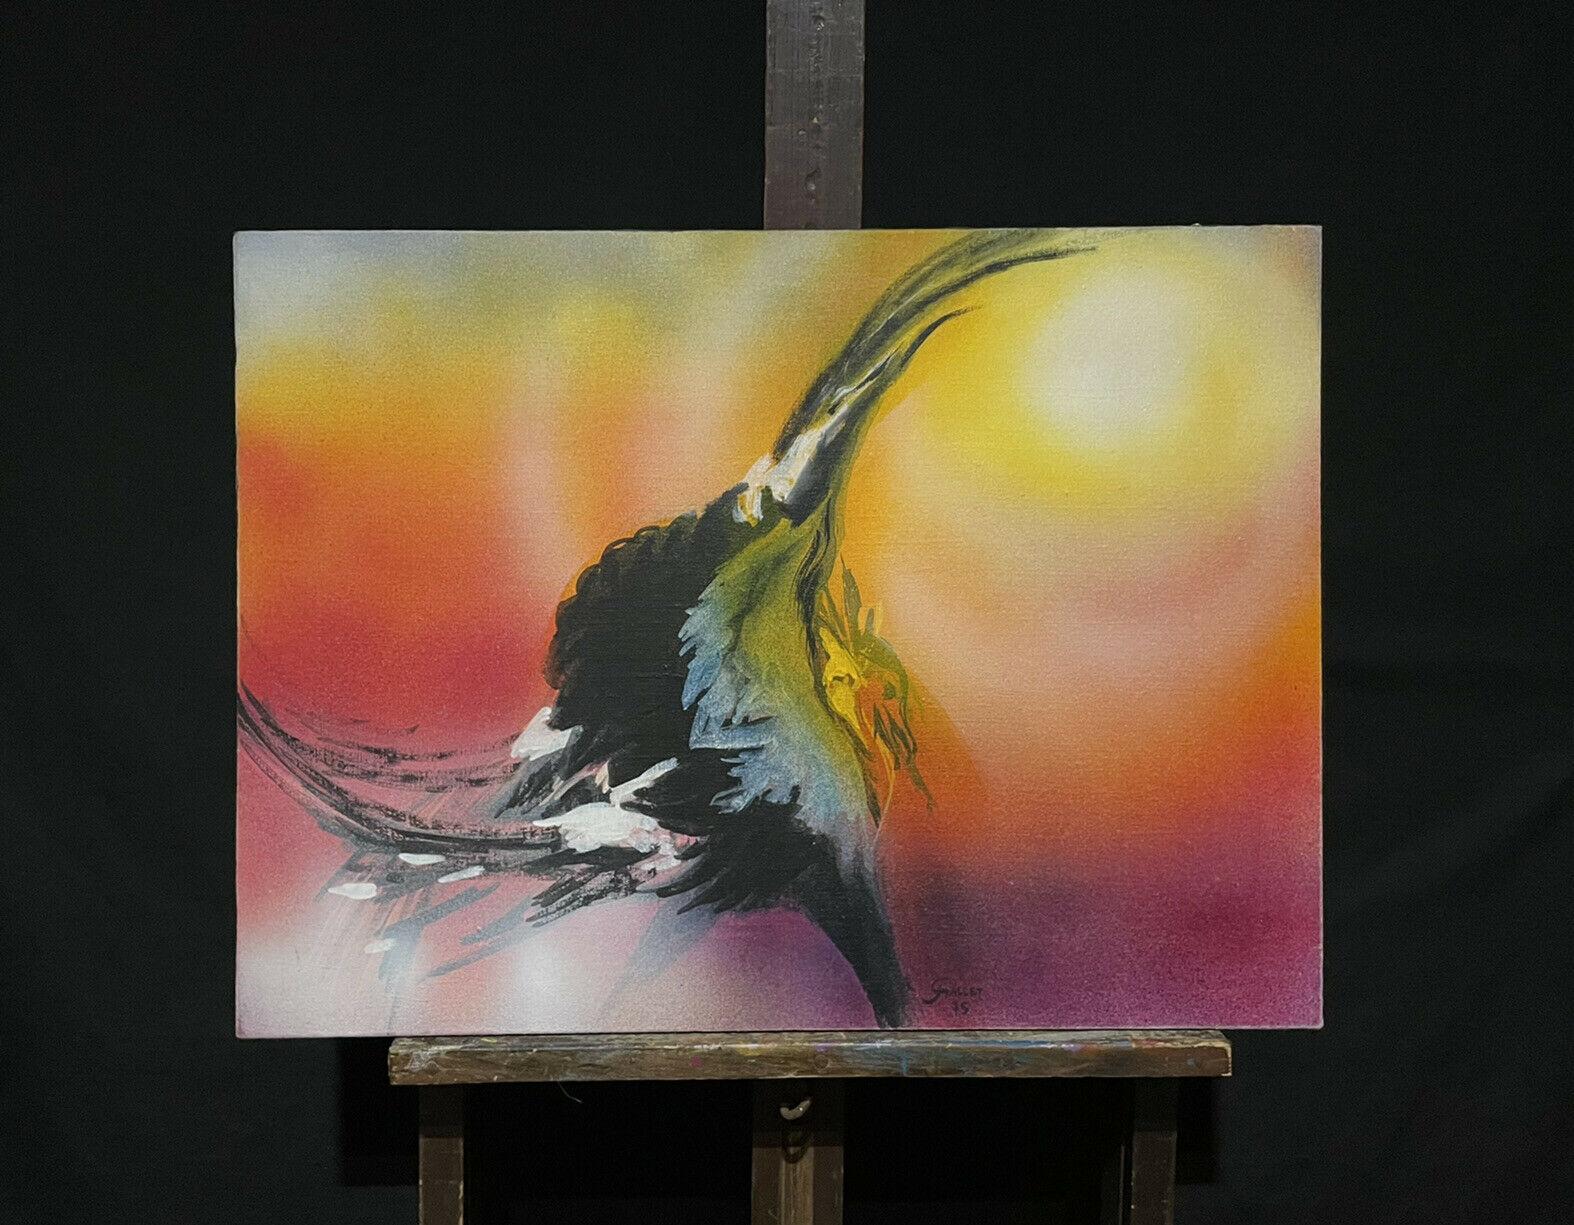 Französisches surrealistisches Fantasie-Ölgemälde, tanzender Vogel, orange-gelber Himmel – Painting von Josyne Gallet